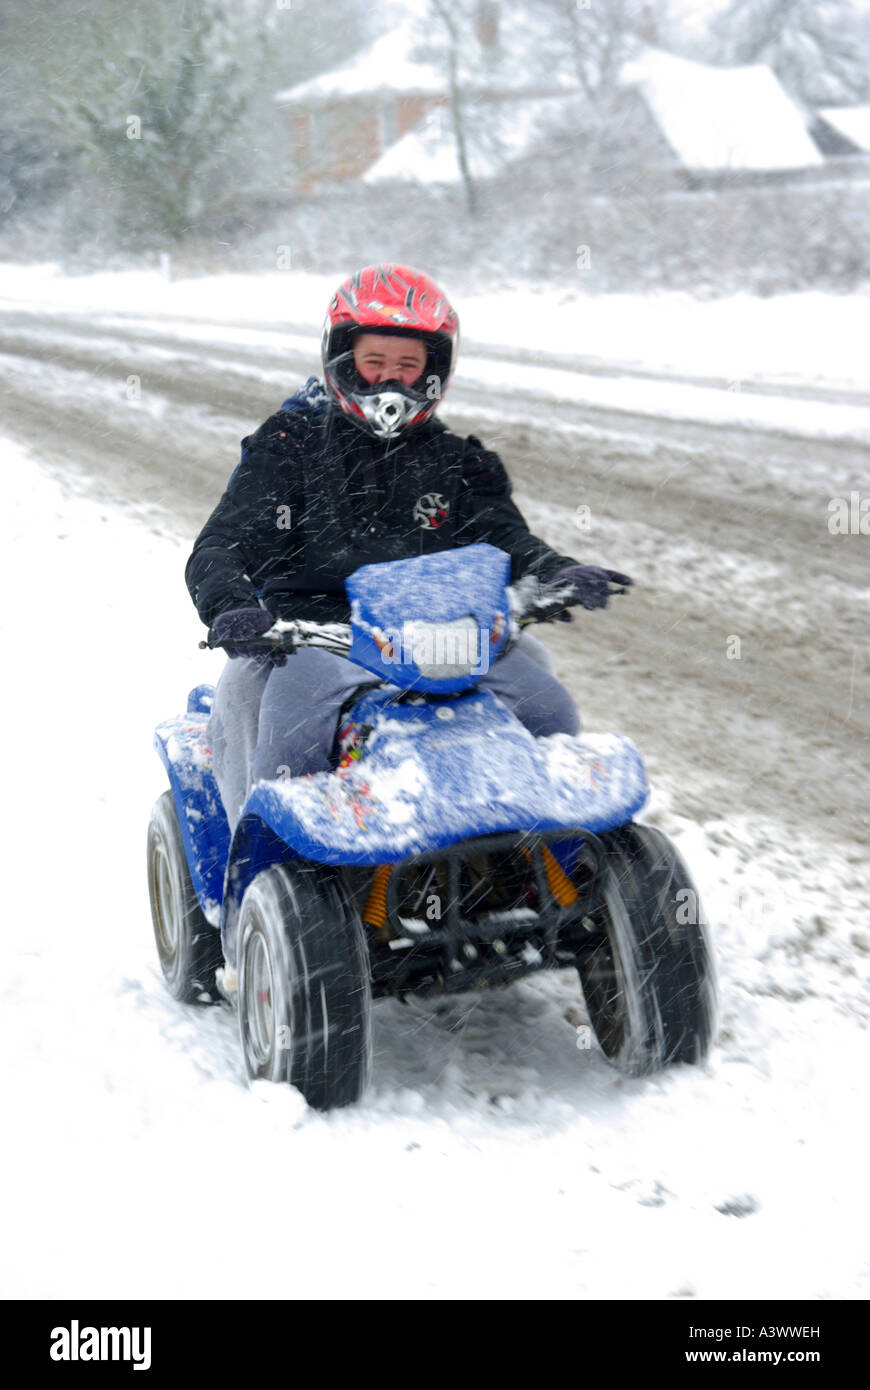 La neige qui tombe sur la jeune personne en rouge casque quad conduire vite le long de la neige a couvert la chaussée village ne sait pas si homme ou femme Essex England UK Banque D'Images